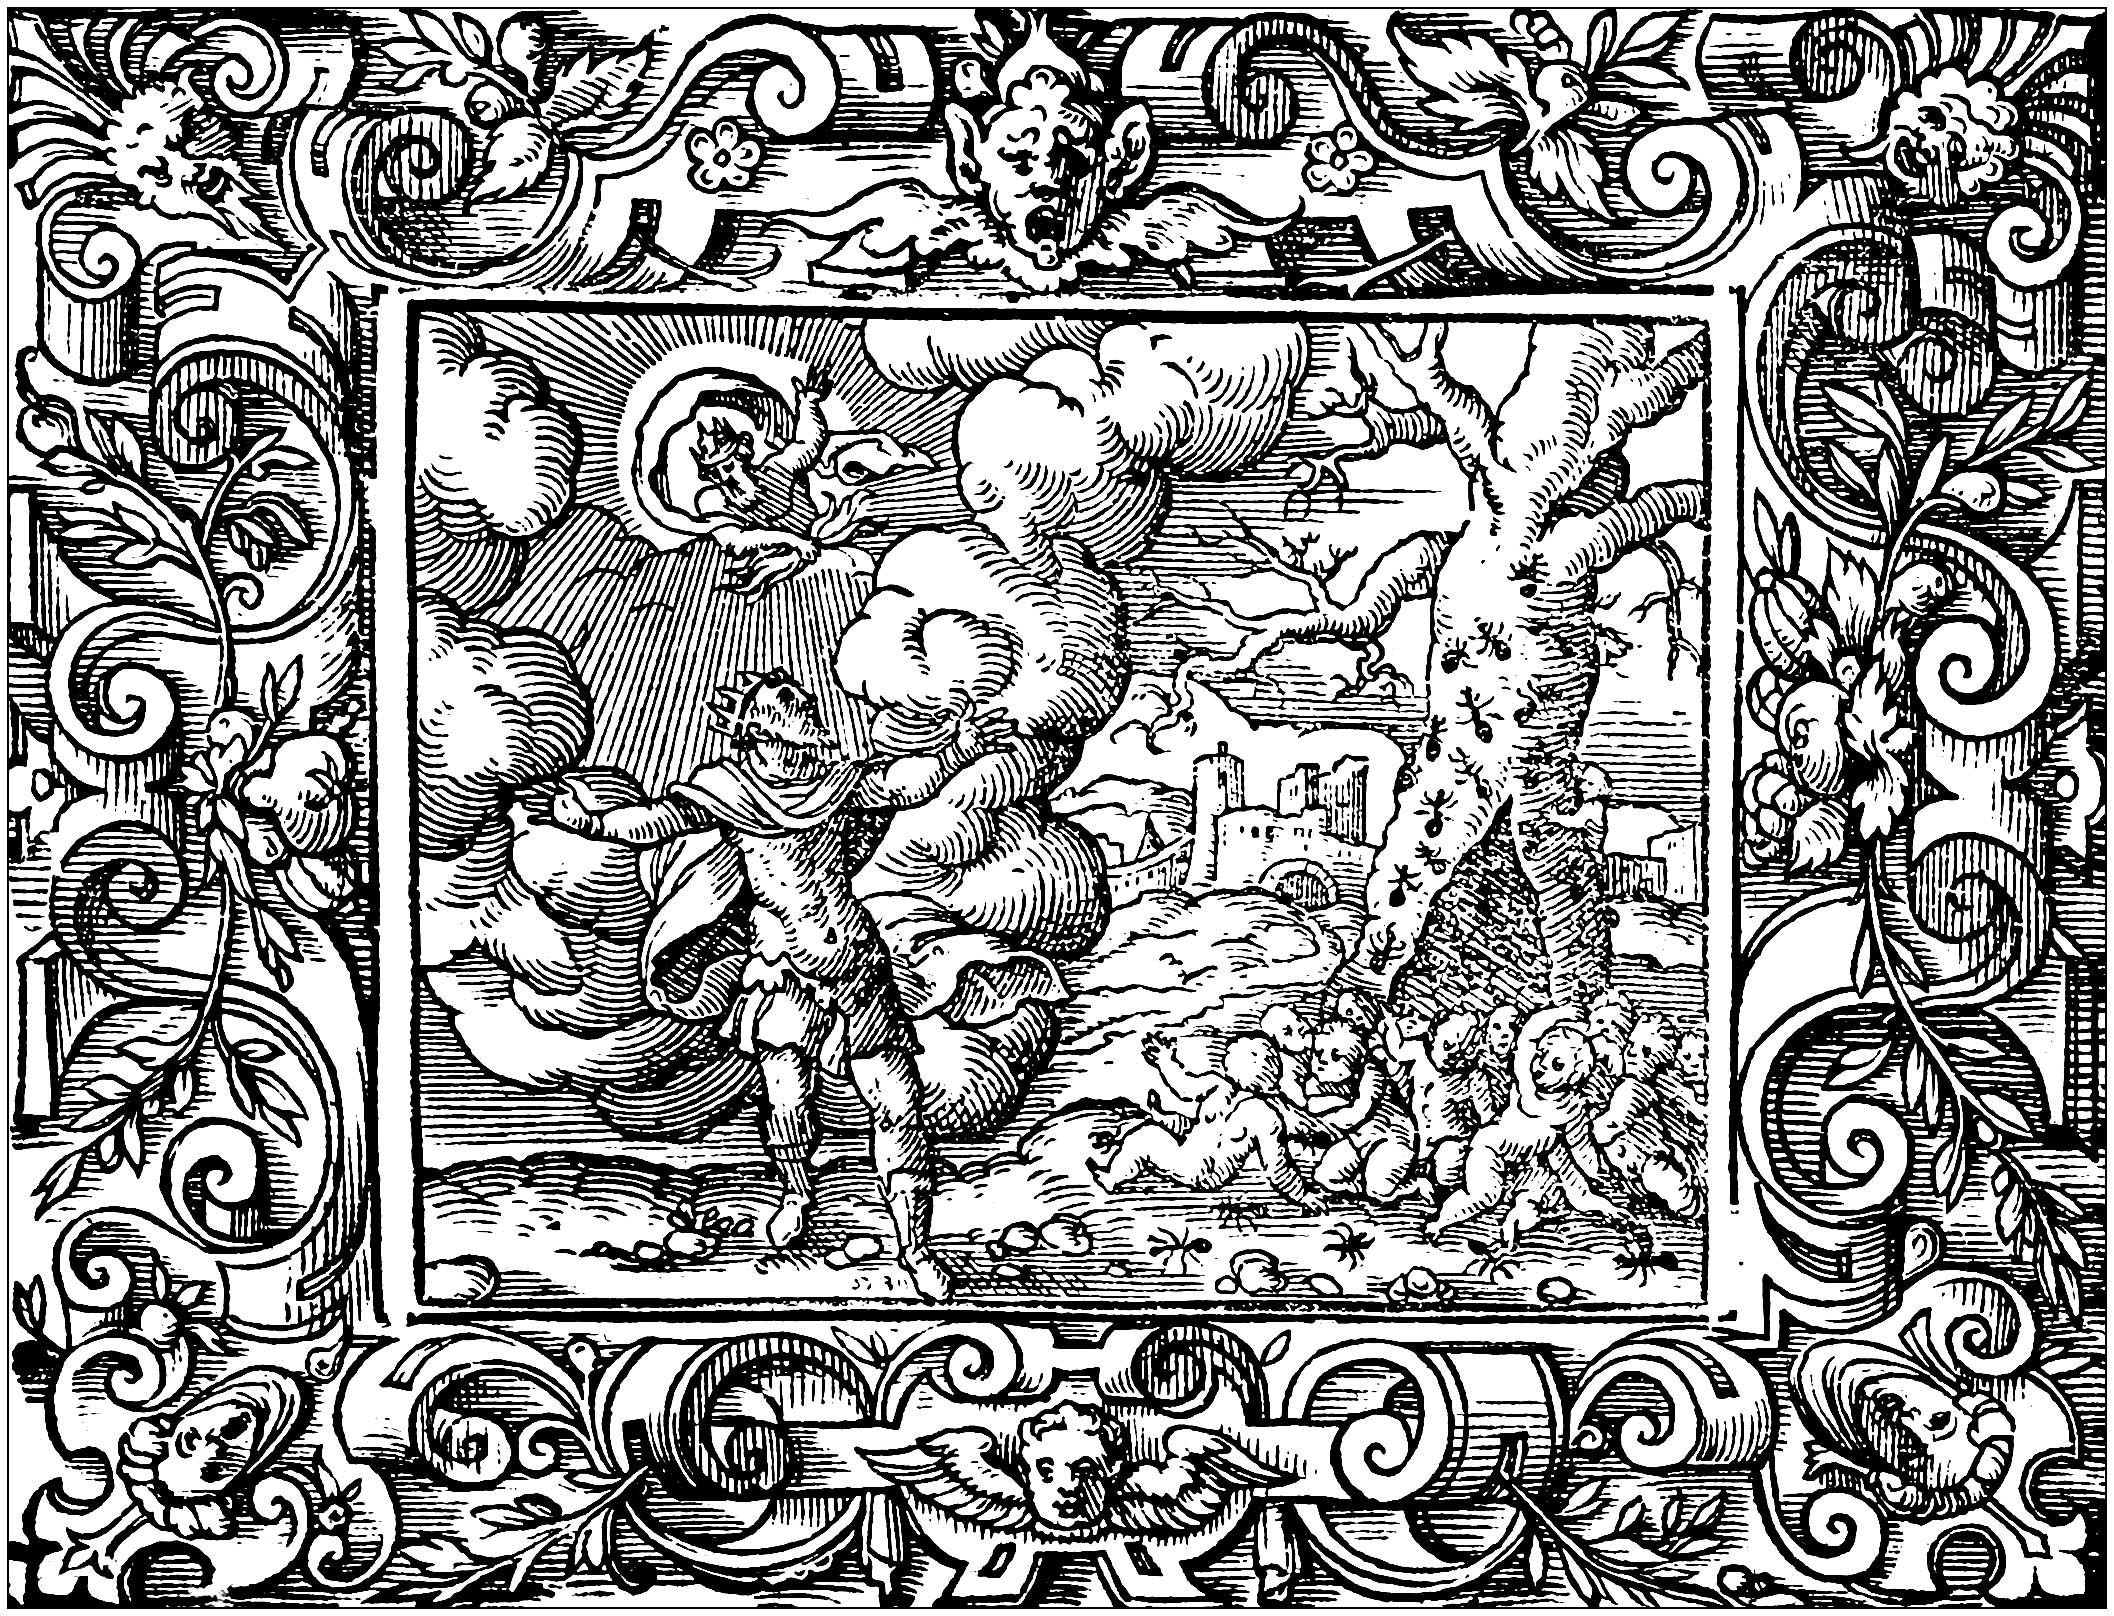 Malvorlage nach einer Zeichnung von Virgil Solis (1514 - 1562). Inspiriert durch 'Die Metamorphosen', ein lateinisches Gedicht des römischen Dichters Ovid (erstes Jahrhundert)